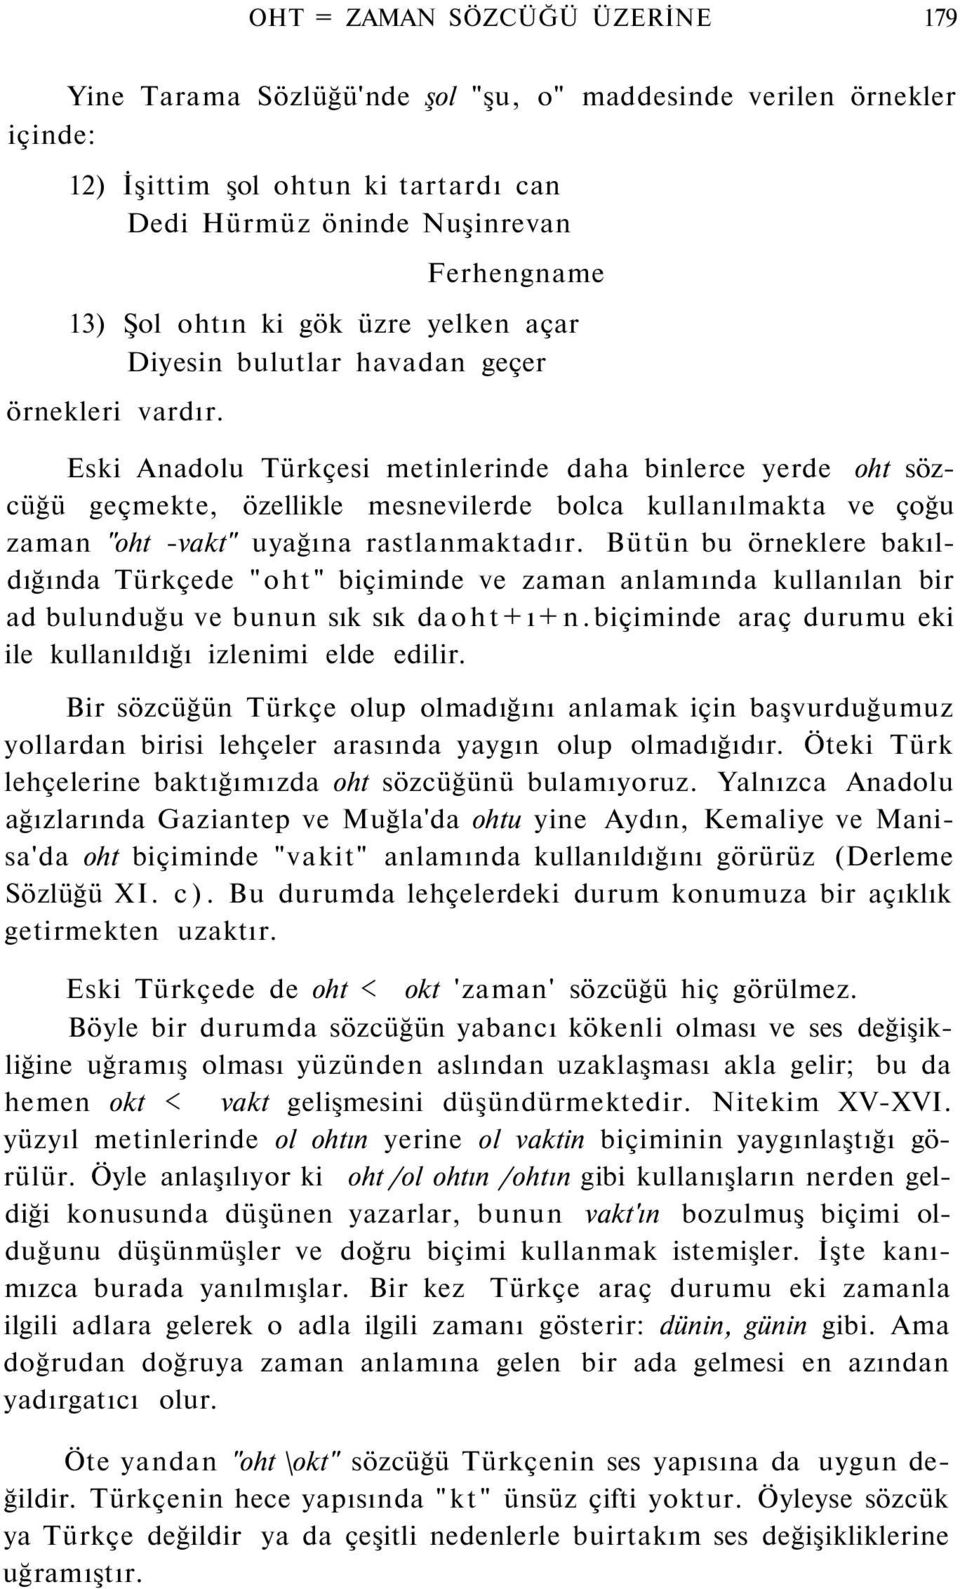 Eski Anadolu Türkçesi metinlerinde daha binlerce yerde oht sözcüğü geçmekte, özellikle mesnevilerde bolca kullanılmakta ve çoğu zaman "oht -vakt" uyağına rastlanmaktadır.